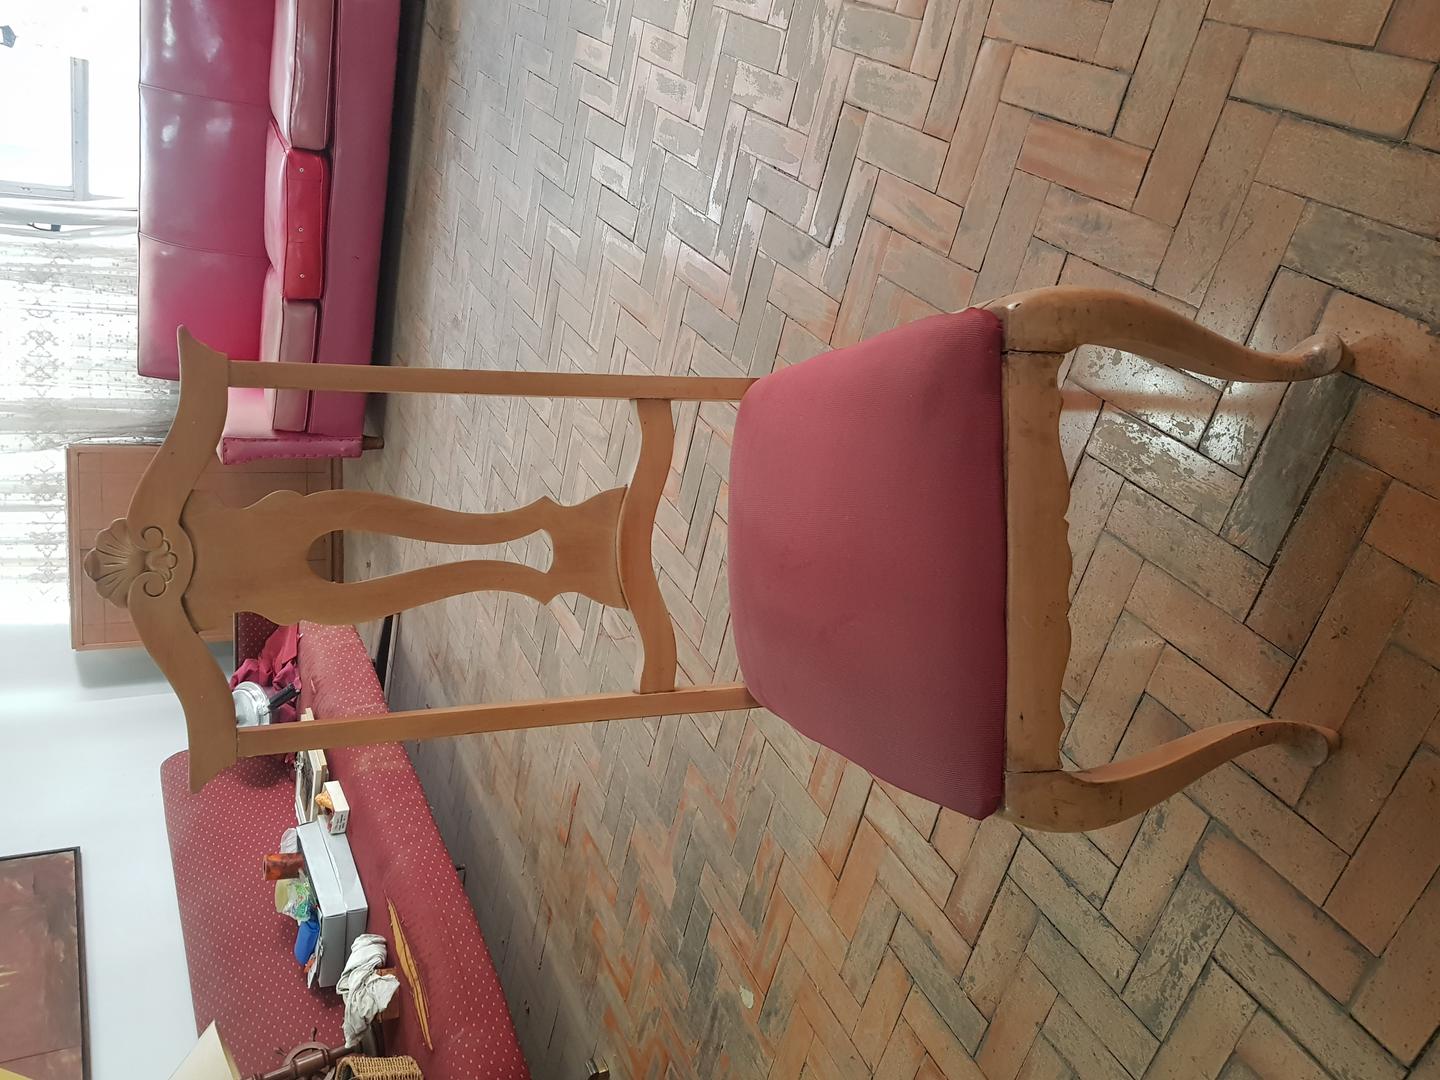 Cadeira de Jantar estofada s/ braços  em Madeira / Estofado Vermelho